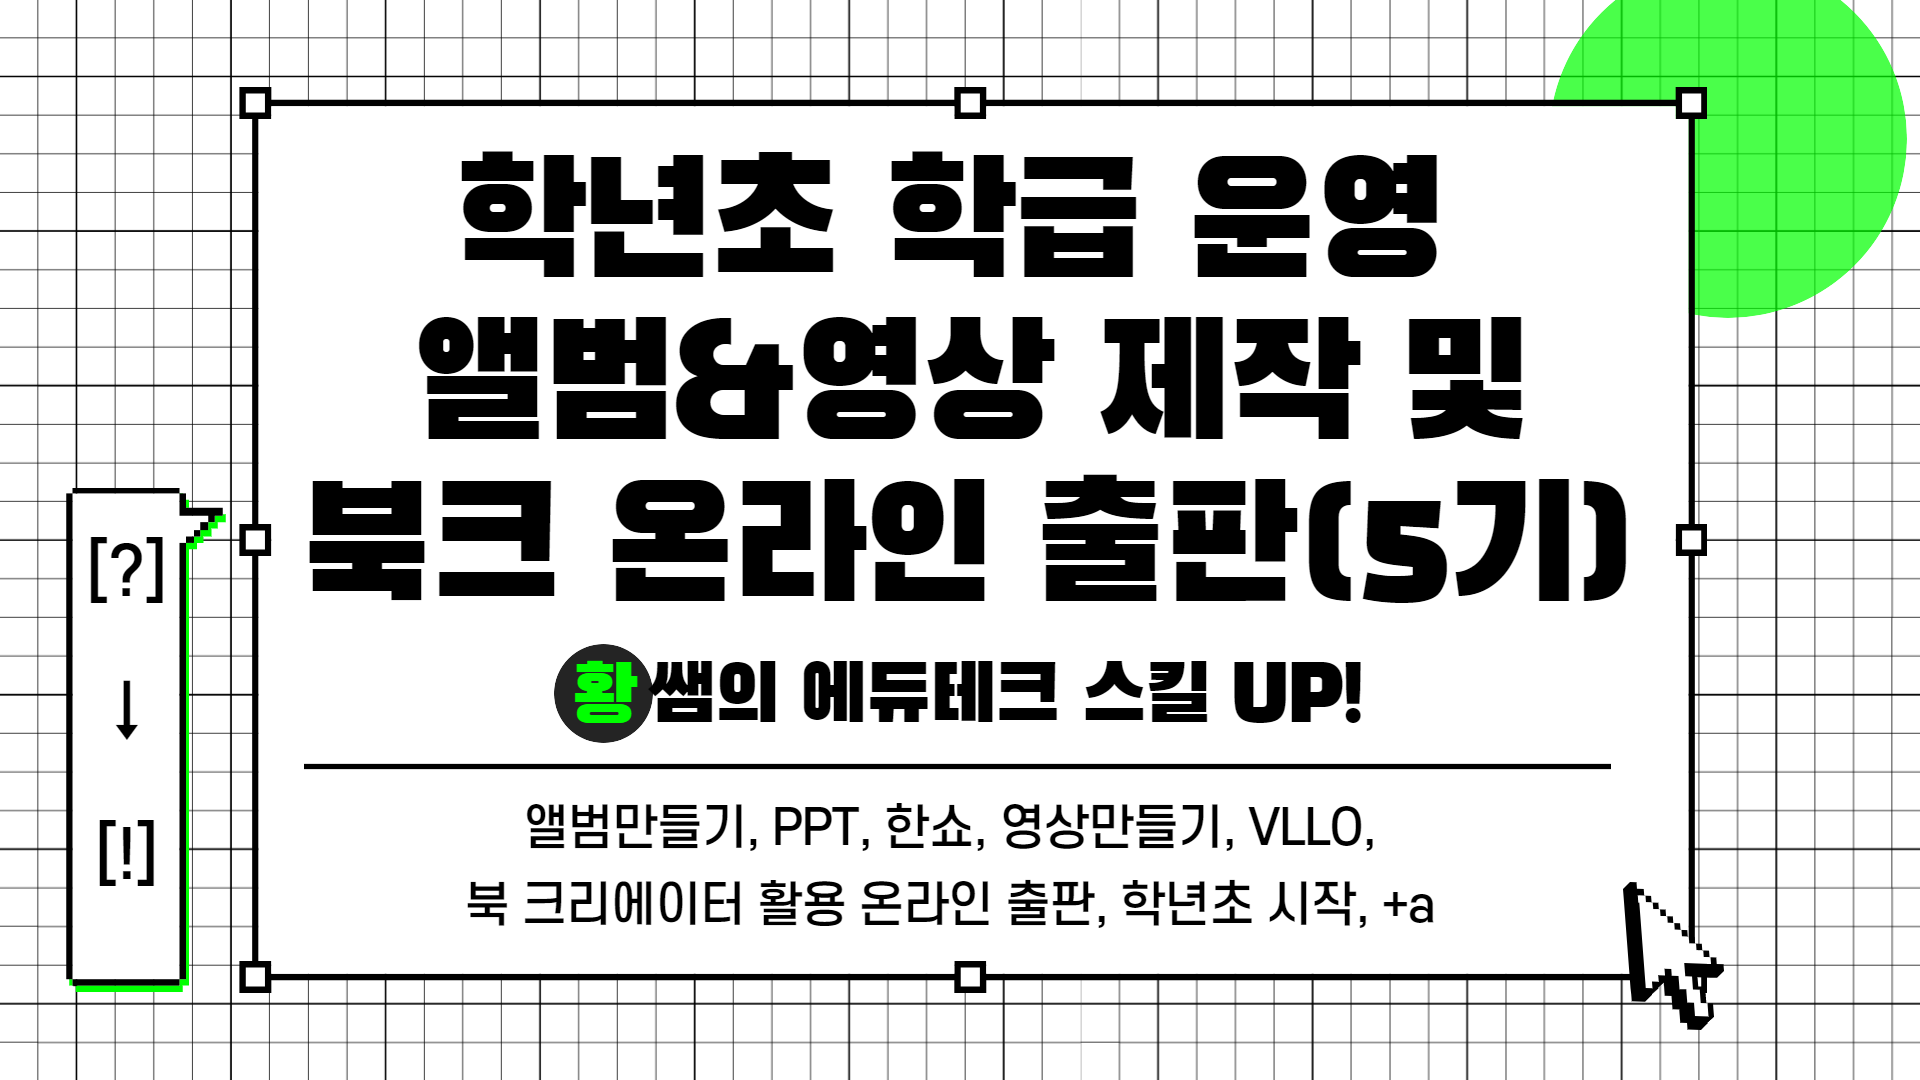 [?] → [!] 황쌤의 에듀테크 스킬 UP!(학급 운영 앨범&영상 제작 및 온라인 출판(5기))